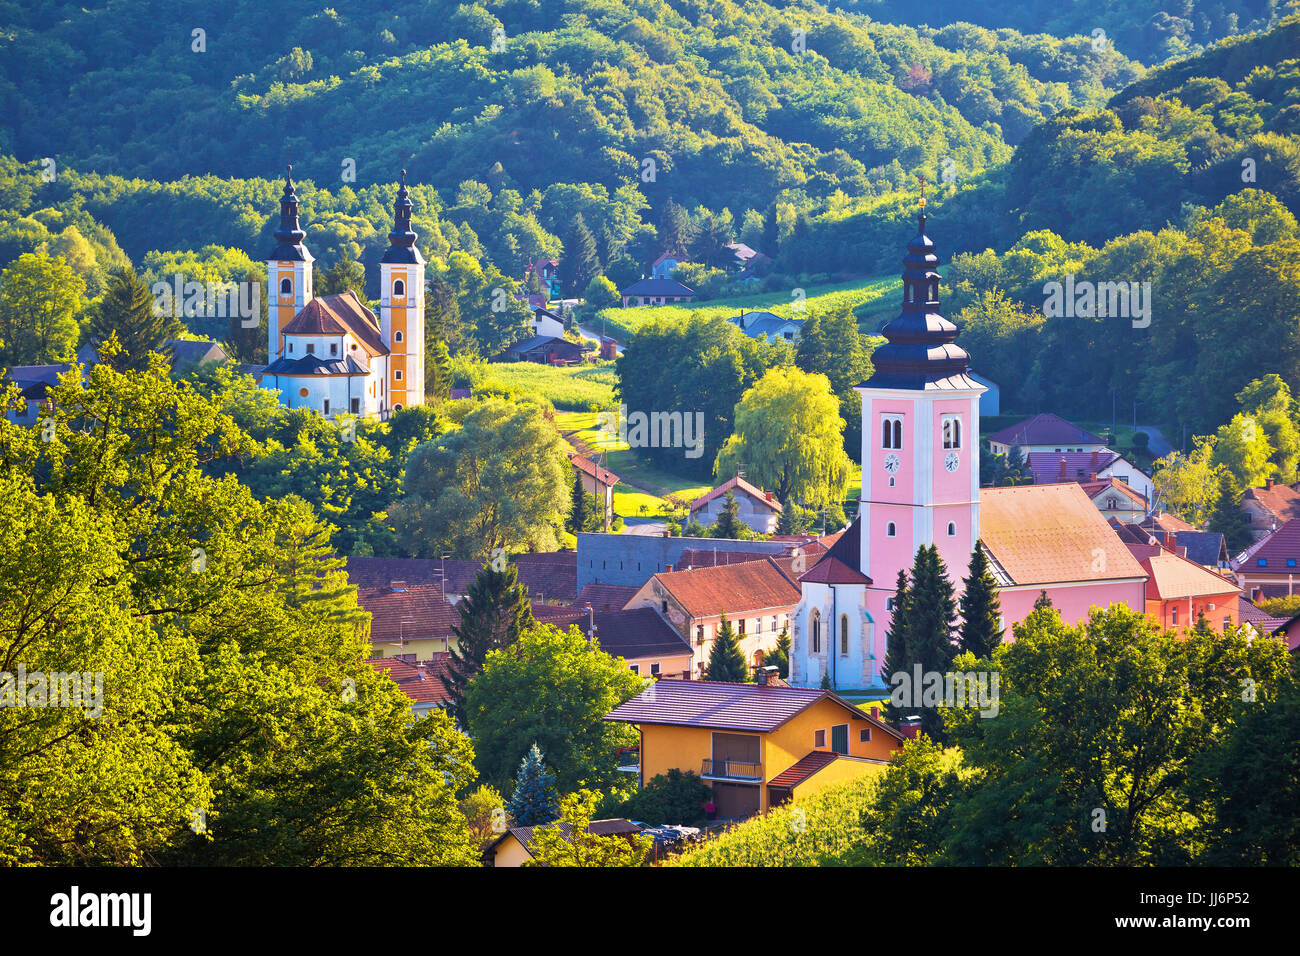 Dorf von Strigova Türme und die grüne Landschaft, Medjimurje Region in Kroatien Stockfoto